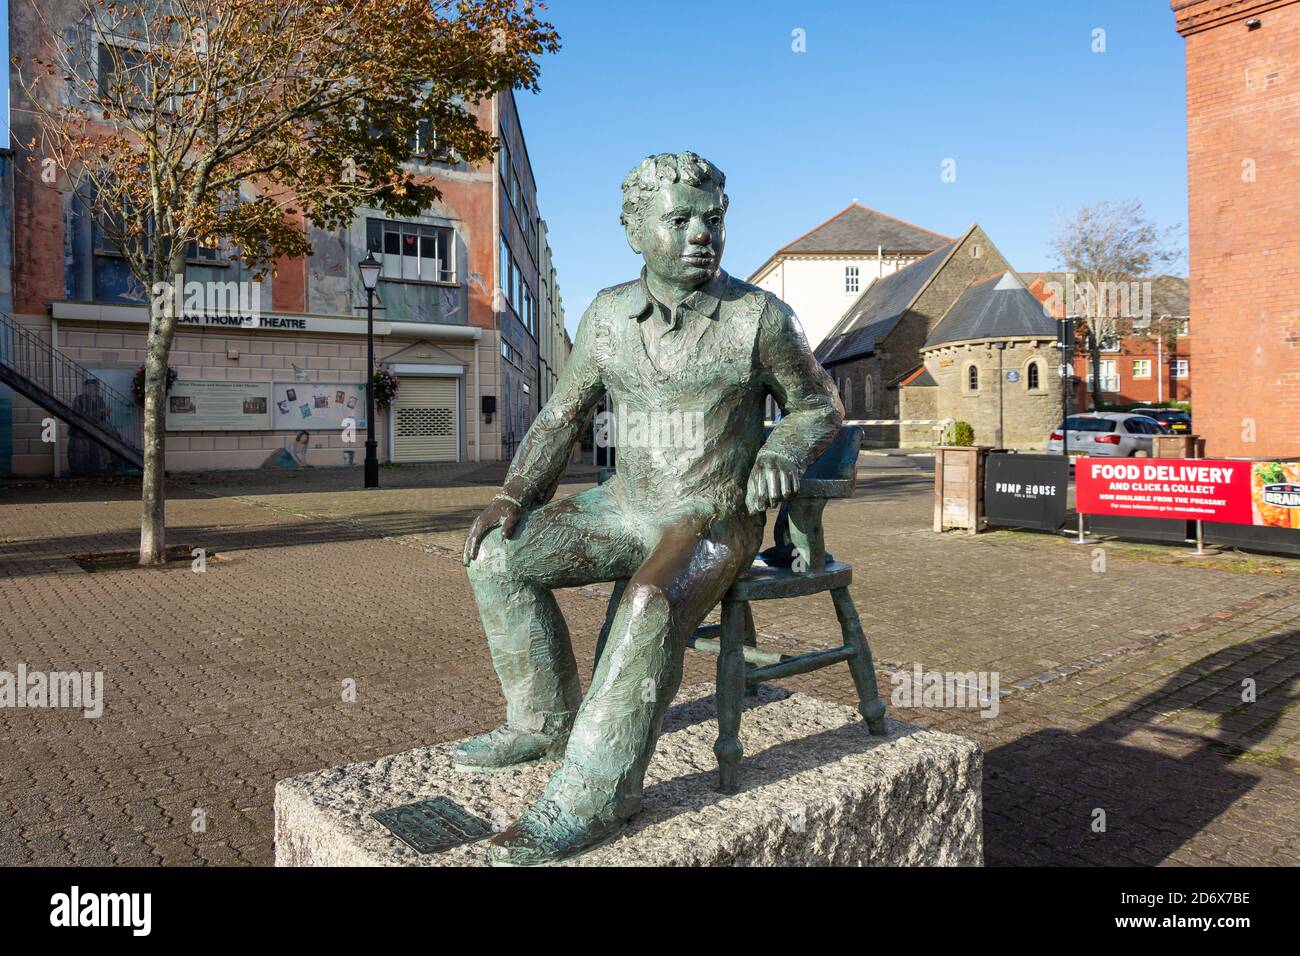 Dylan Thomas Statue, quartier maritime, Swansea (Abertawe), ville et comté de Swansea, pays de Galles, Royaume-Uni Banque D'Images